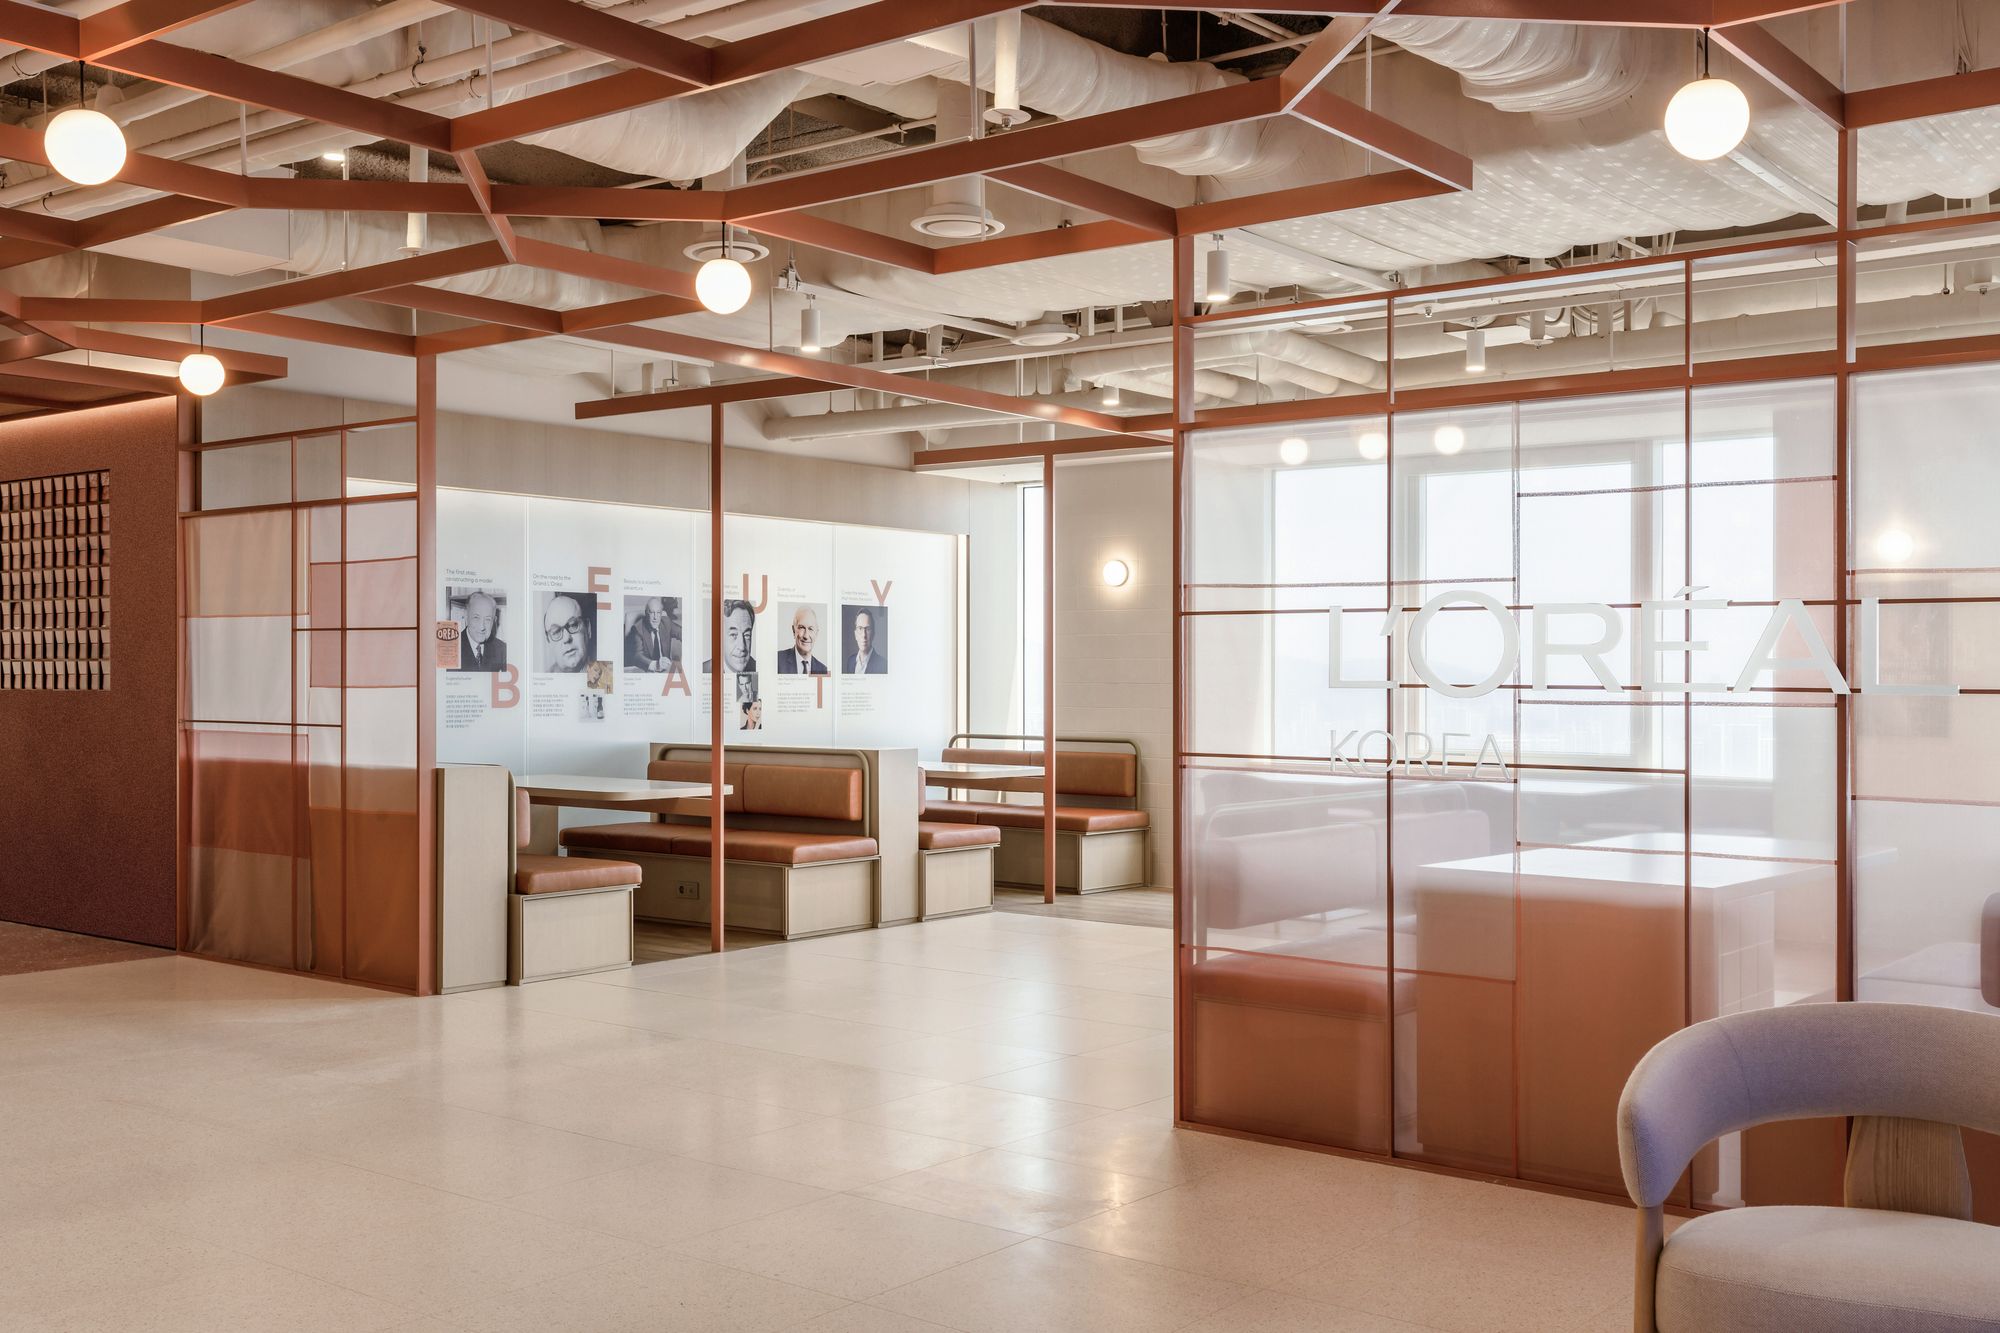 图片[5]|欧莱雅韩国办事处——首尔|ART-Arrakis | 建筑室内设计的创新与灵感